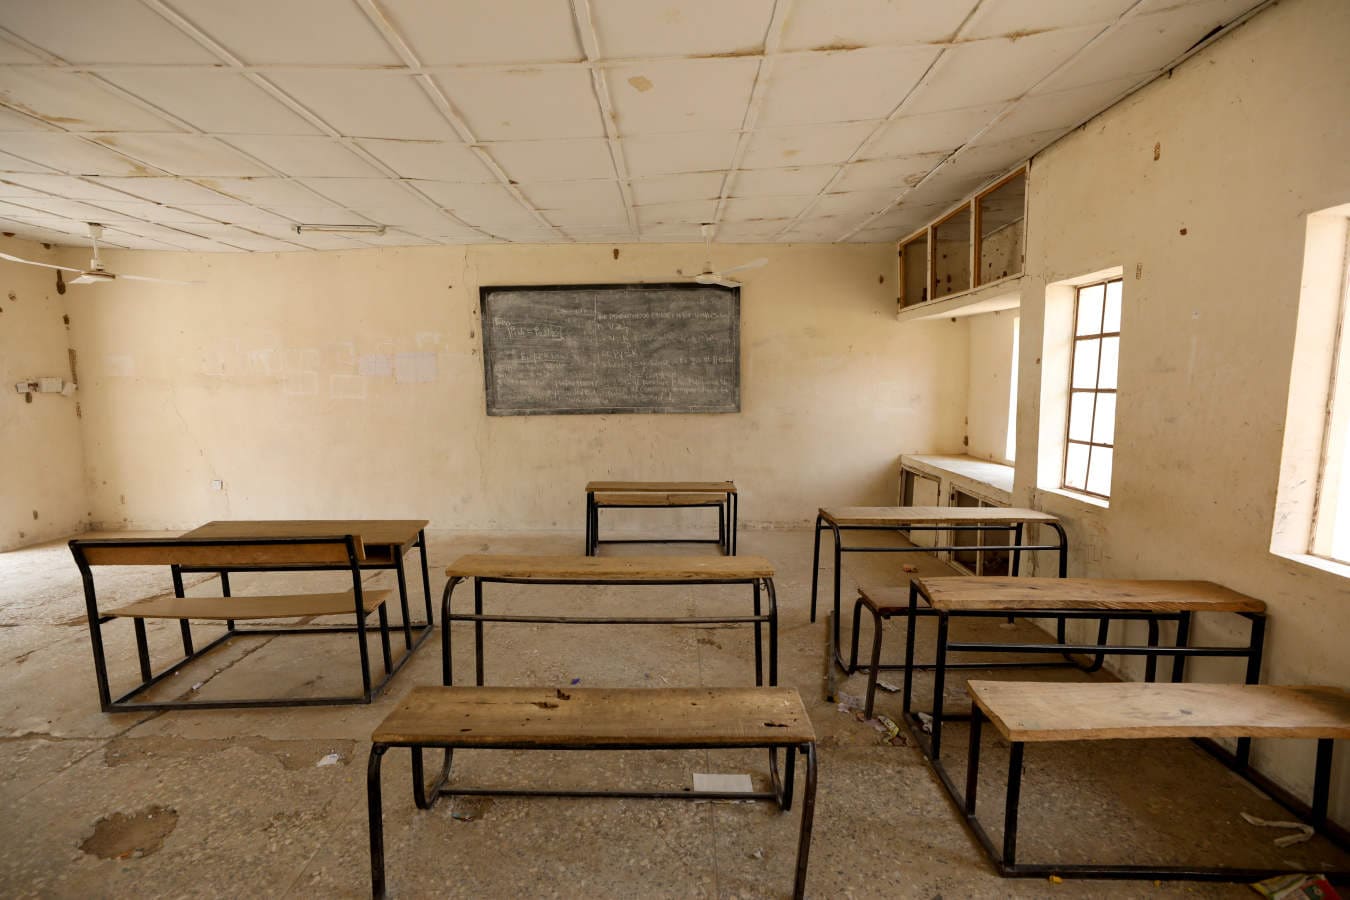 «No quiero volver a esa escuela otra vez, excepto si me transfieren a otro lugar: tengo miedo.» Las palabras de Amina Usman, una de las niñas que evitó ser secuestrada hace un par de semanas cuando miembros de Boko Haram irrumpieron en la escuela de Dapchi, al noreste de Nigeria, y se llevaron a más de cien compañeras, ilustra el horror. Pero lo sucedido en el polvoriento pueblo de Amina sólo es un nuevo episodio de la violencia desatada en el país por este grupo terrorista cuyo nombre podría traducirse en lengua hausa, la más hablada en la región, como «la educación occidental está prohibida.» En 2014 miembros de este grupo raptaron a 276 niñas en la ciudad de Chibok. Desde que iniciaron sus actividades con la intención de crear un estado que se adhiera a una interpretación estricta de la ley islámica, han asesinado a más de veinte mil personas. En las fotografías, familiares de las niñas observan algunas de sus pertenencias en la escuela.